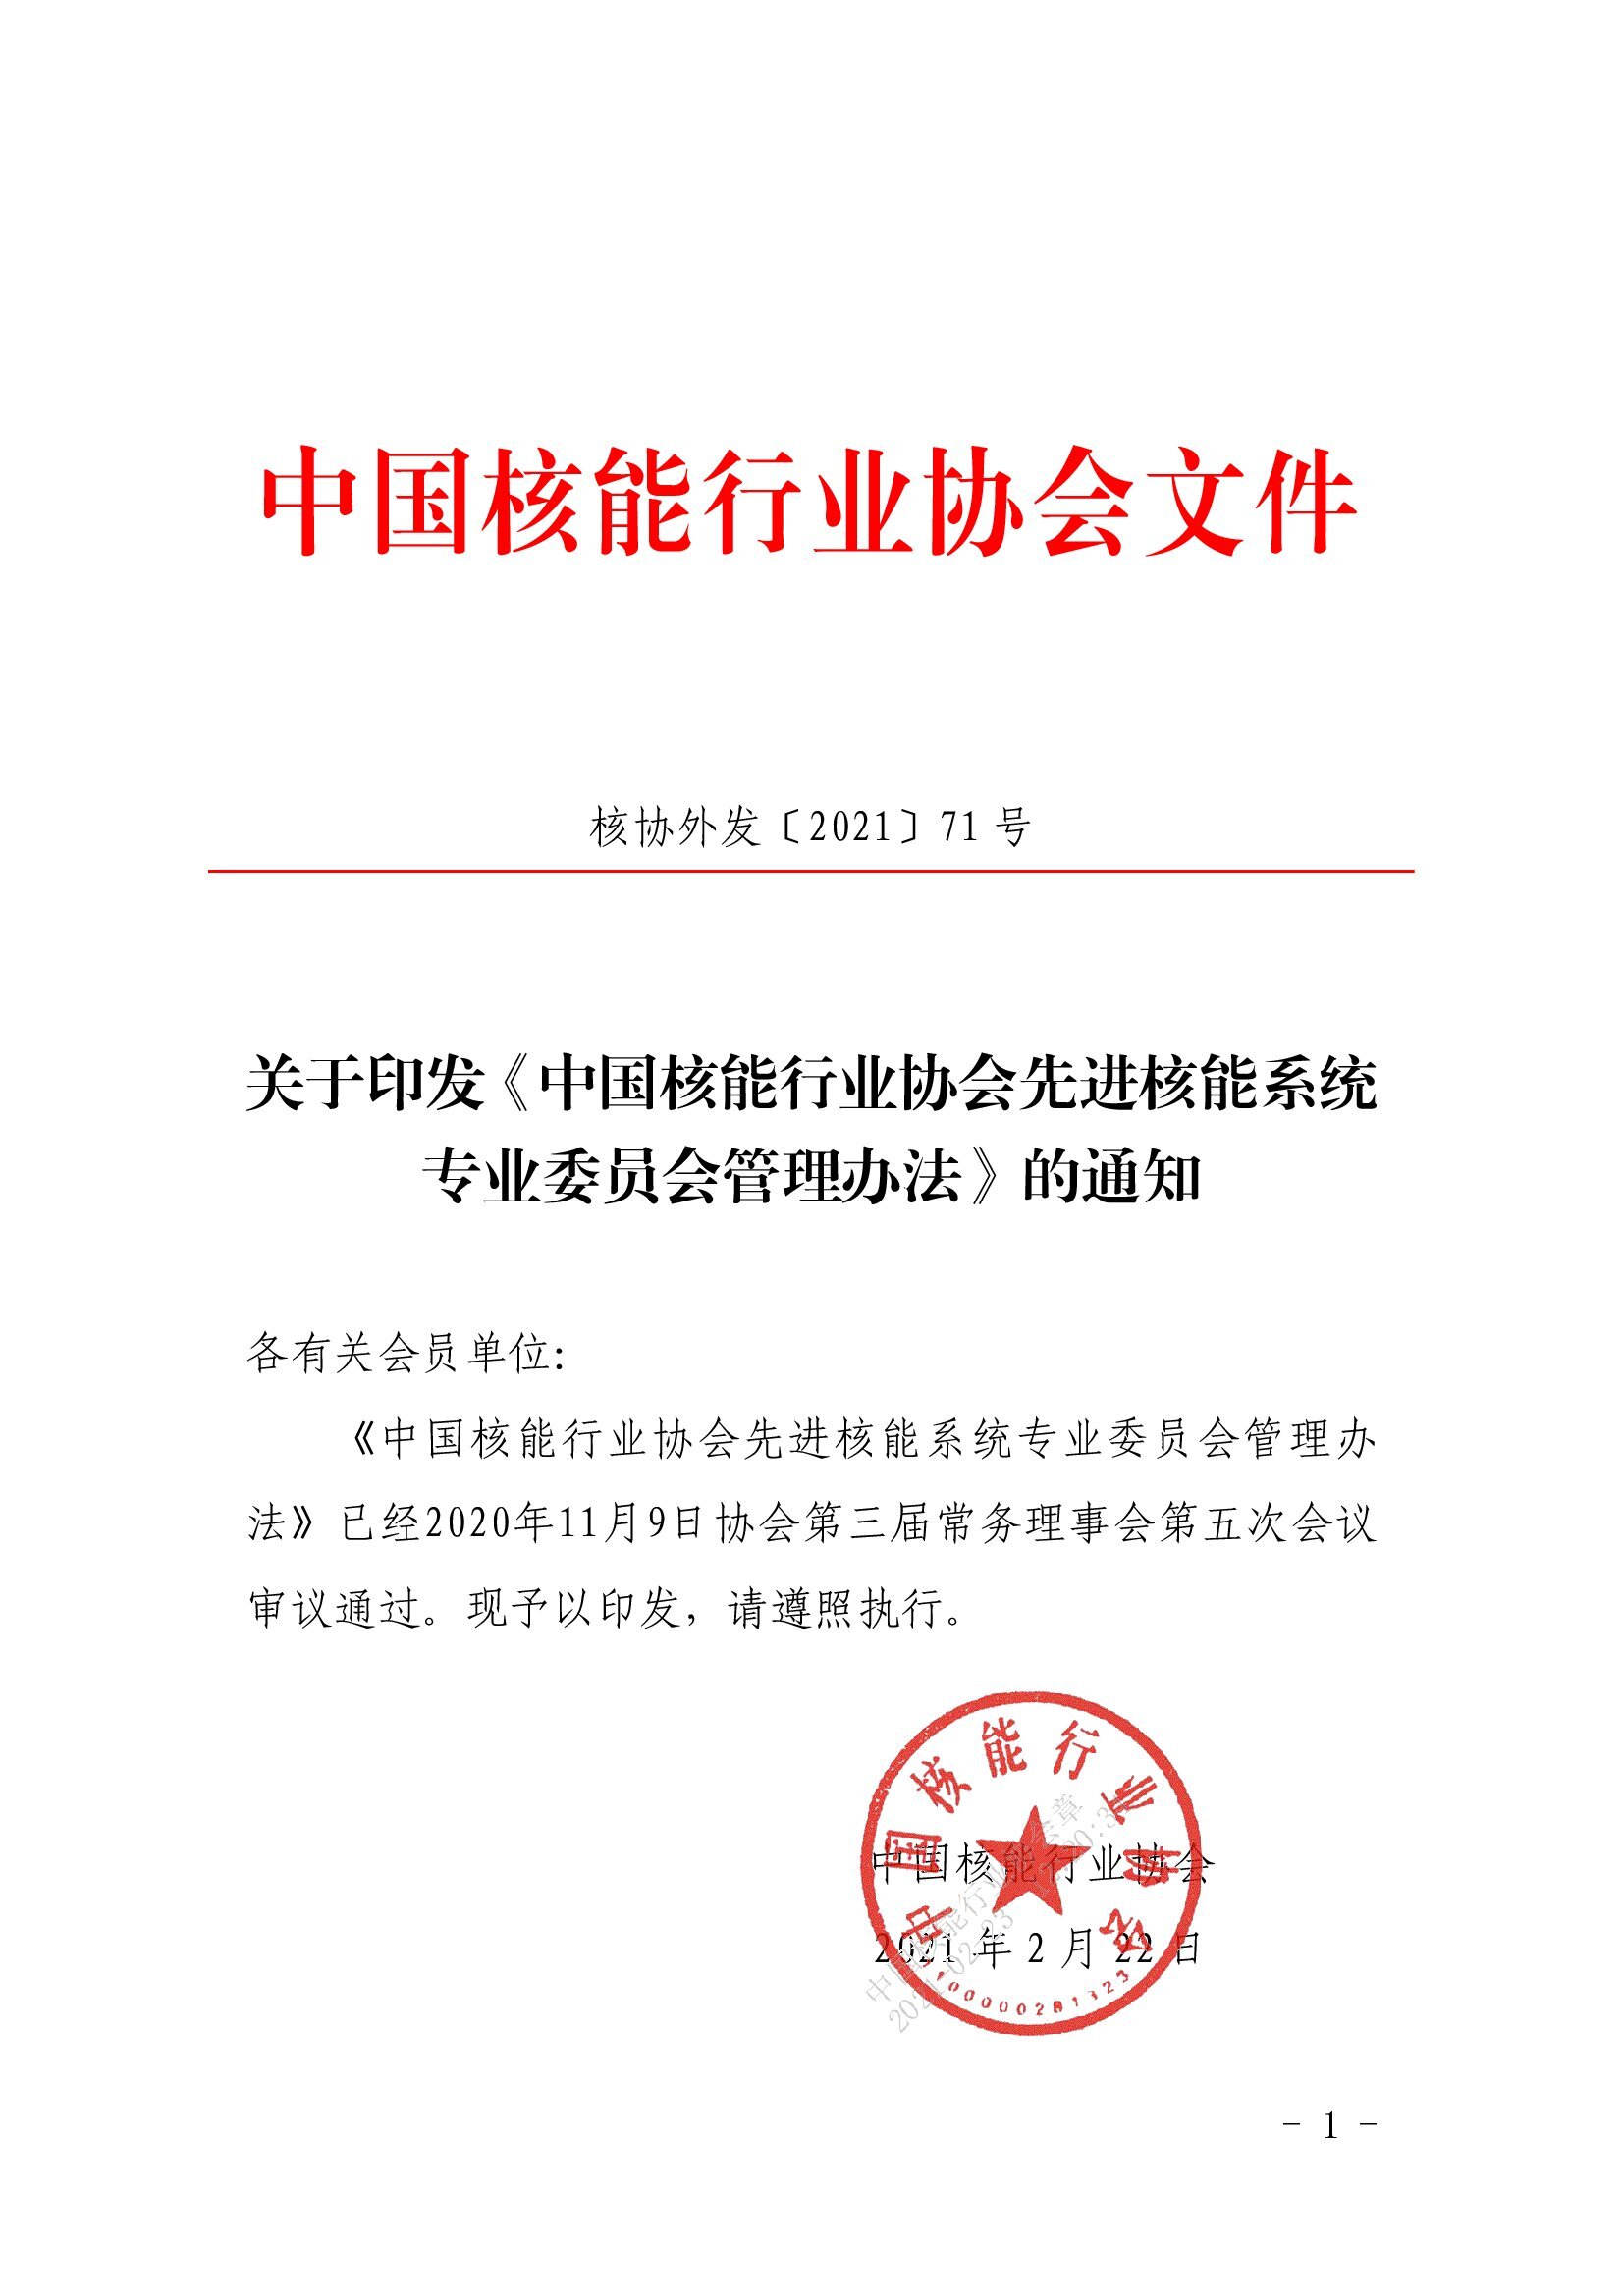 关于印发《中国核能行业协会先进核能系统专业委员会管理办法》的通知-核协外发[2021]71号-复制_00001.jpg